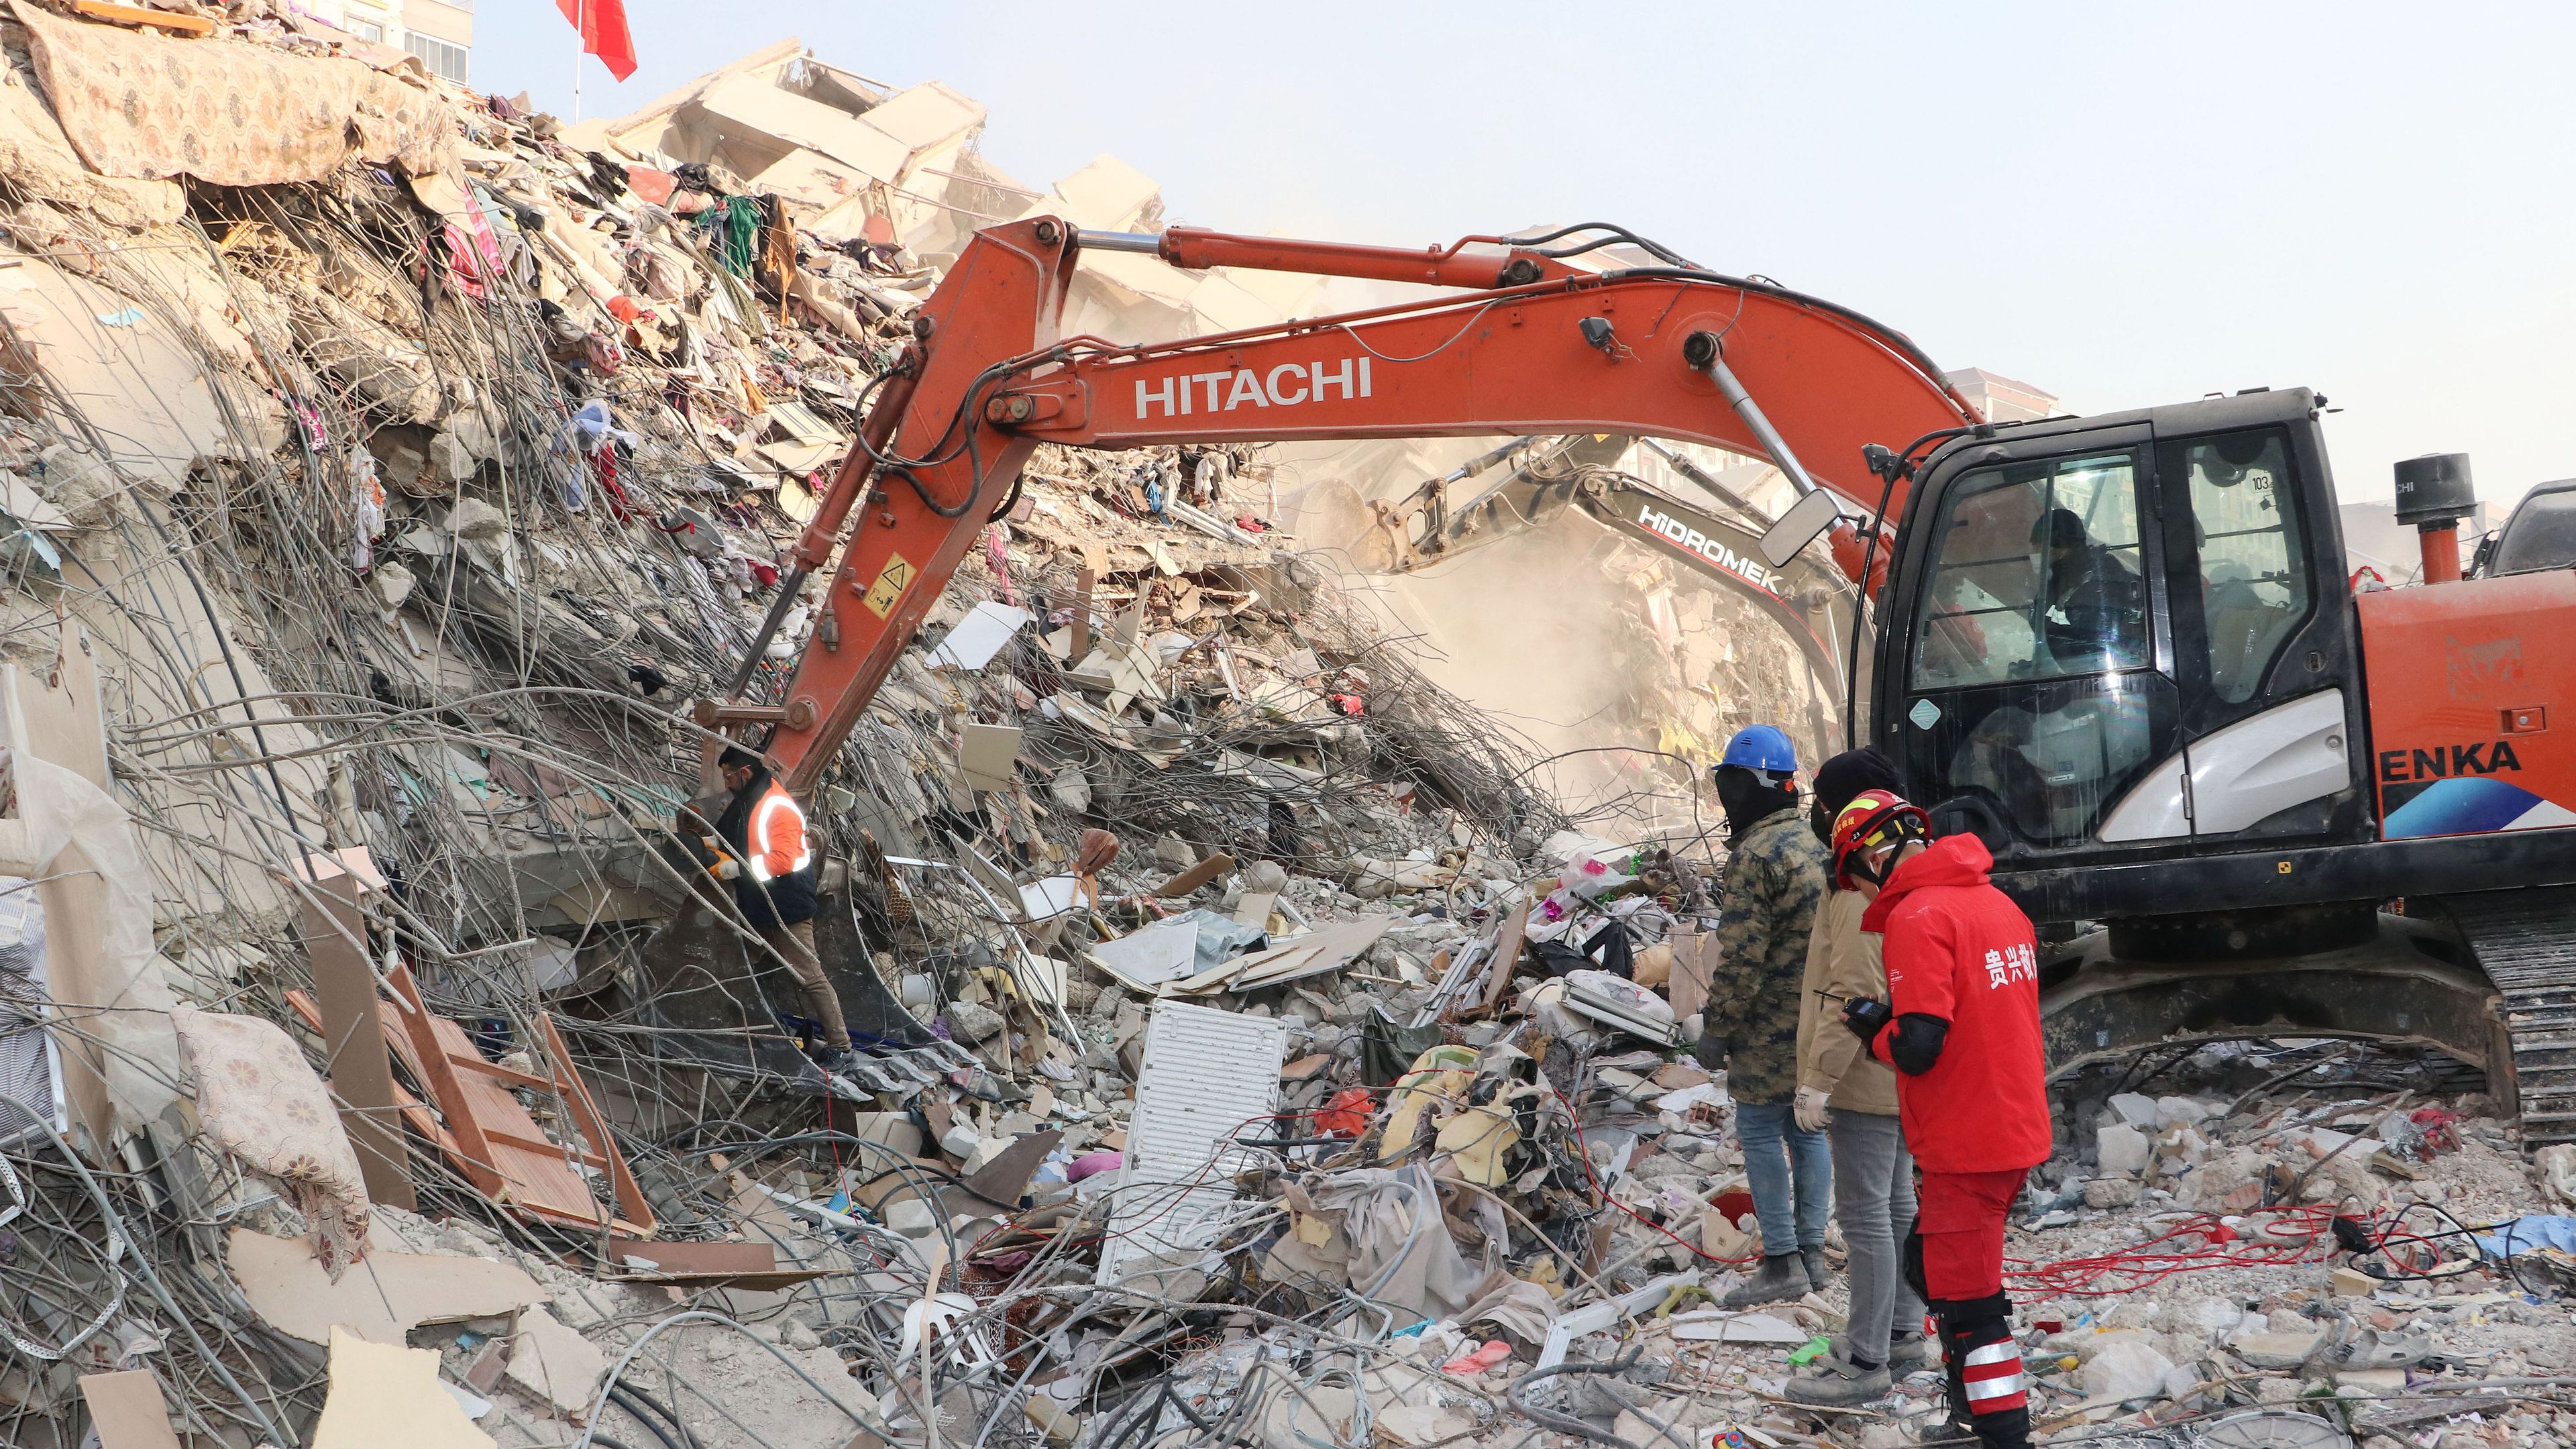 Gaziantepet sem kerülte el a földrengés (fotó: Getty Images)